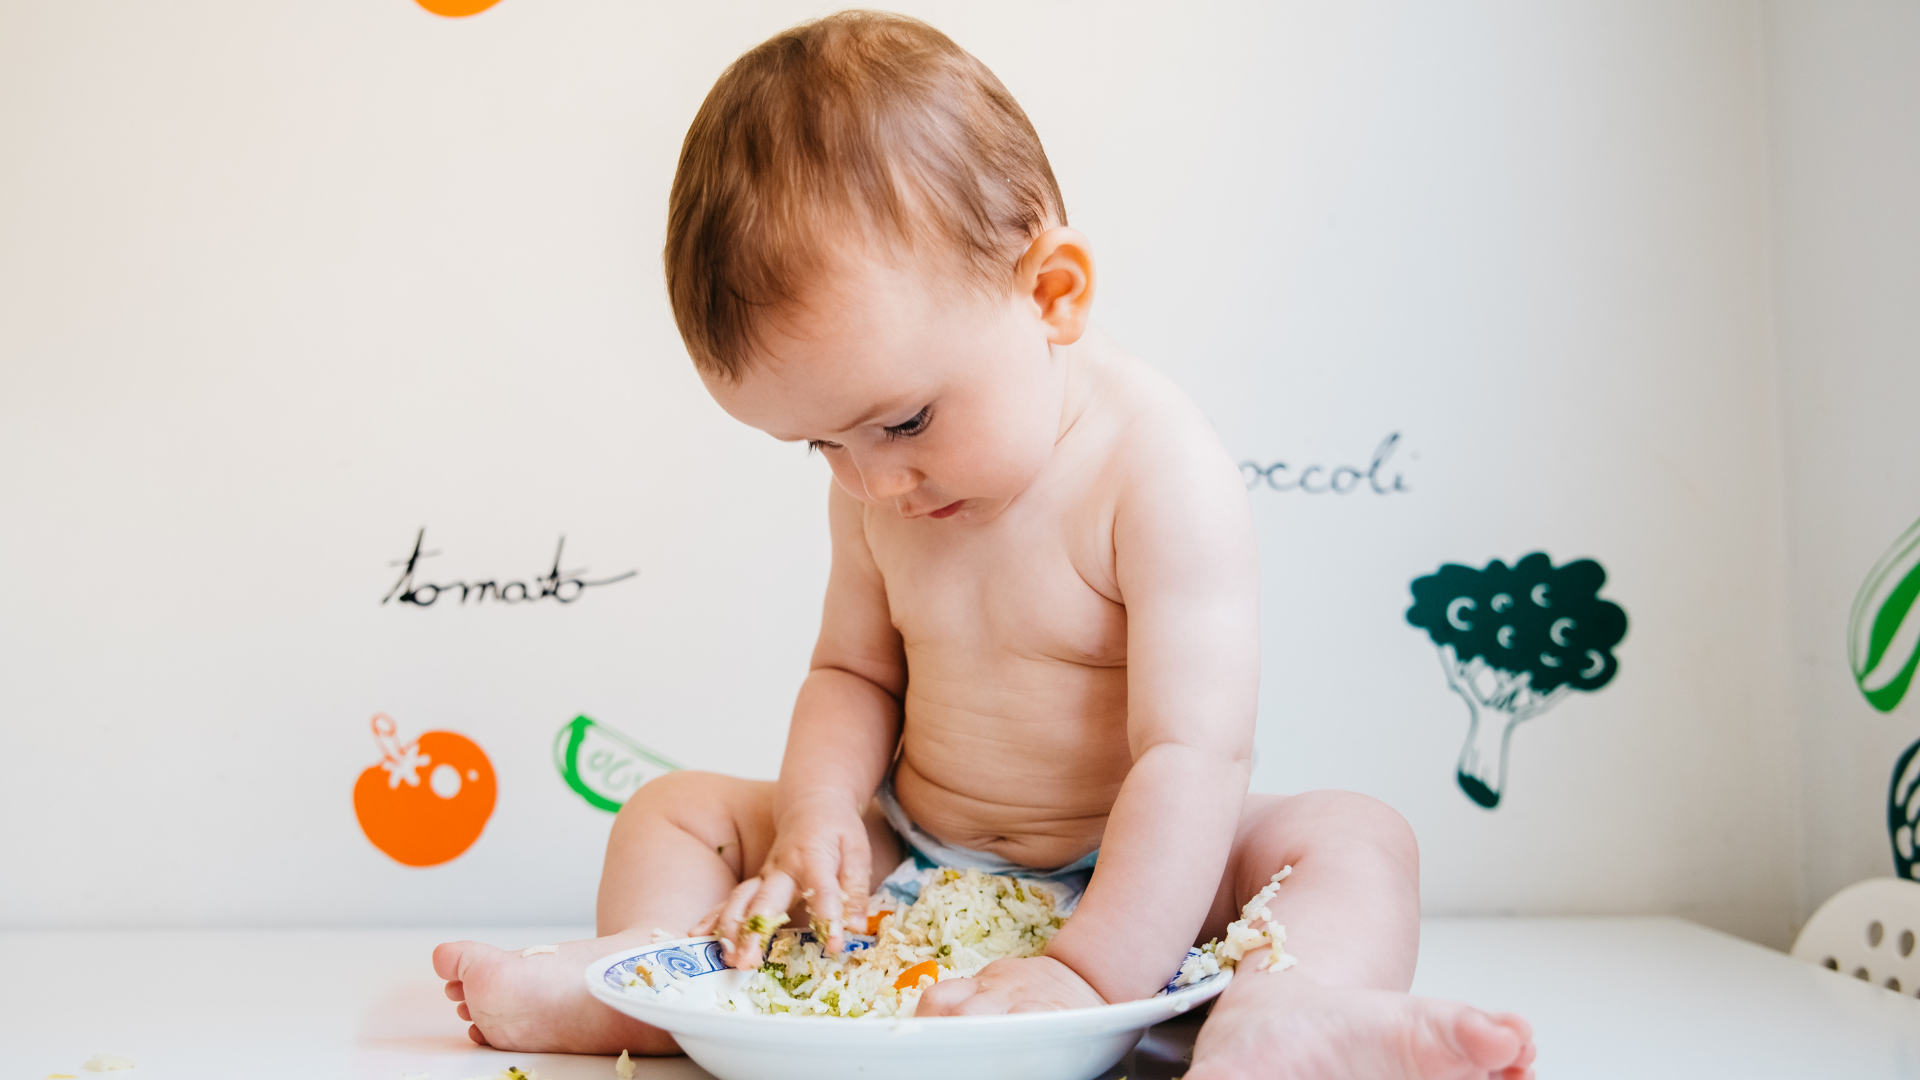 Çünkü bebeklerin sindirim sistemi henüz tam gelişmediği için besin alerjisi riskini göz önünde bulundurarak ilerlemek gerekir. Ek gıdaya geçiş sürecinde dikkate alınması gereken bazı önemli detaylar söz konusudur.